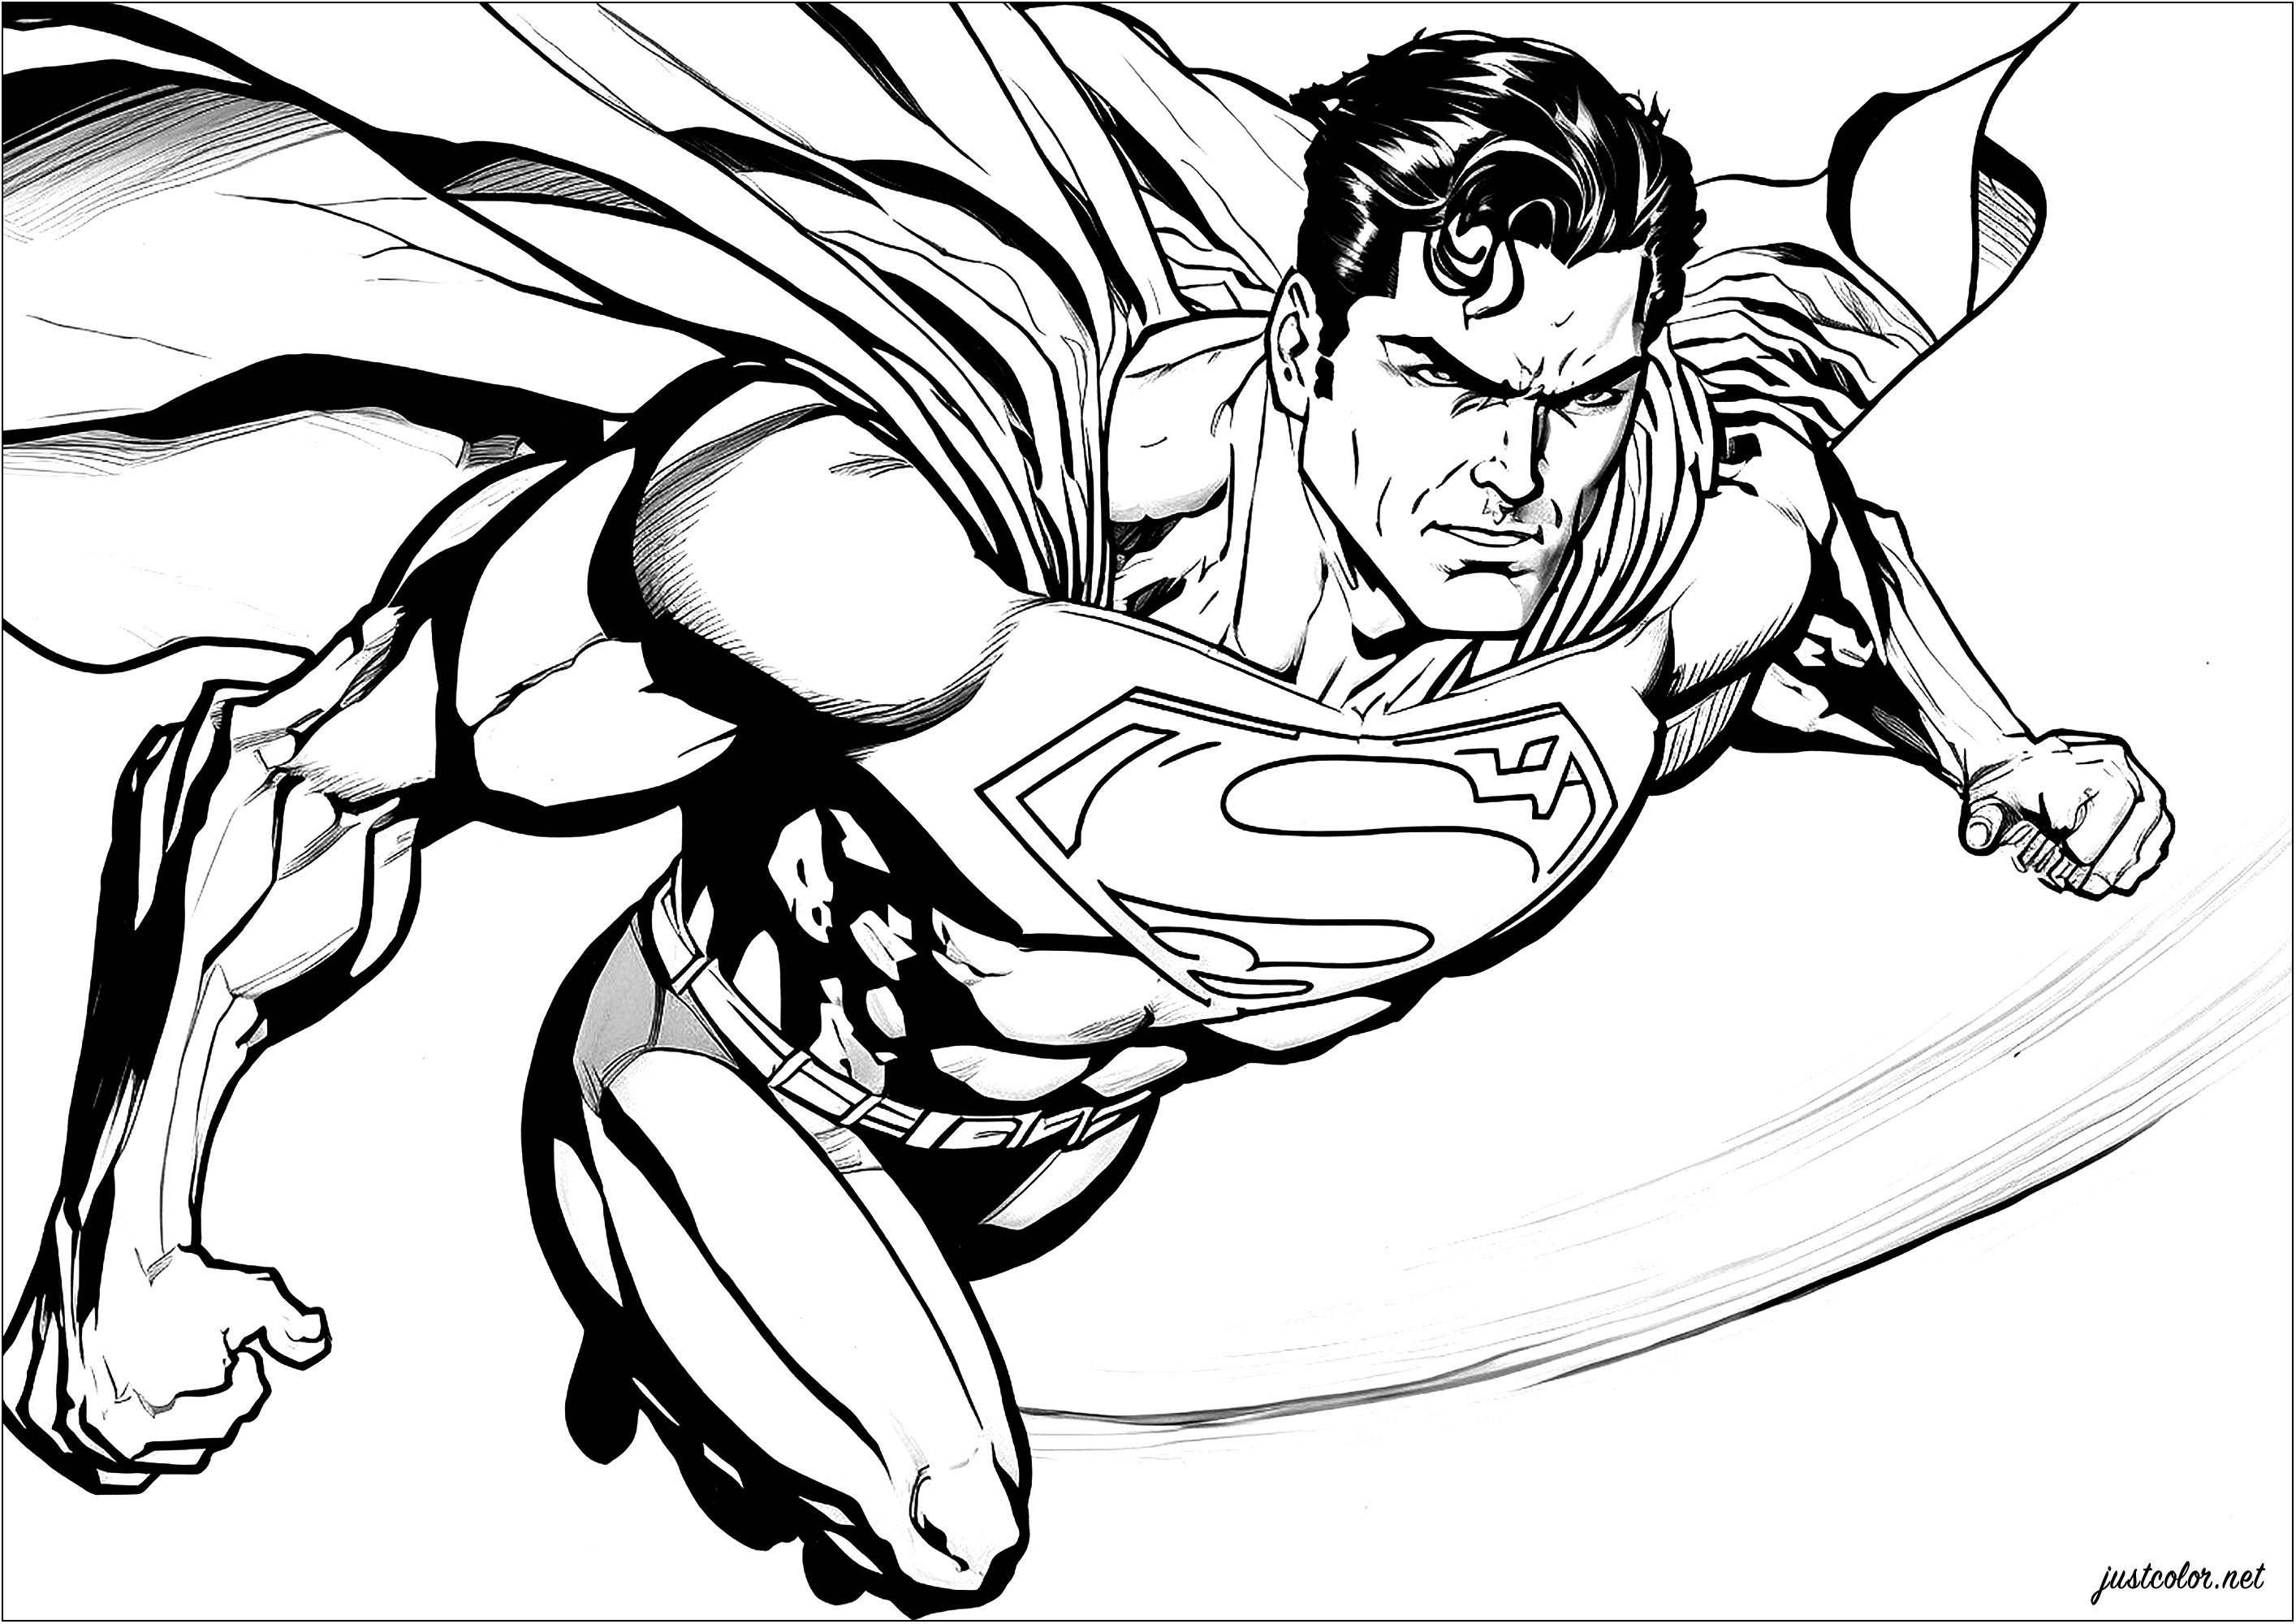 Superman in voller Fahrt, Umhang im Wind. Diese Malvorlage stellt Superman beim Fliegen dar. Wir sehen den Superhelden, gekleidet in seinem Kostüm (bald rot und blau dank Ihnen), fliegen in den Himmel, mit einem Ausdruck der Entschlossenheit auf seinem Gesicht.